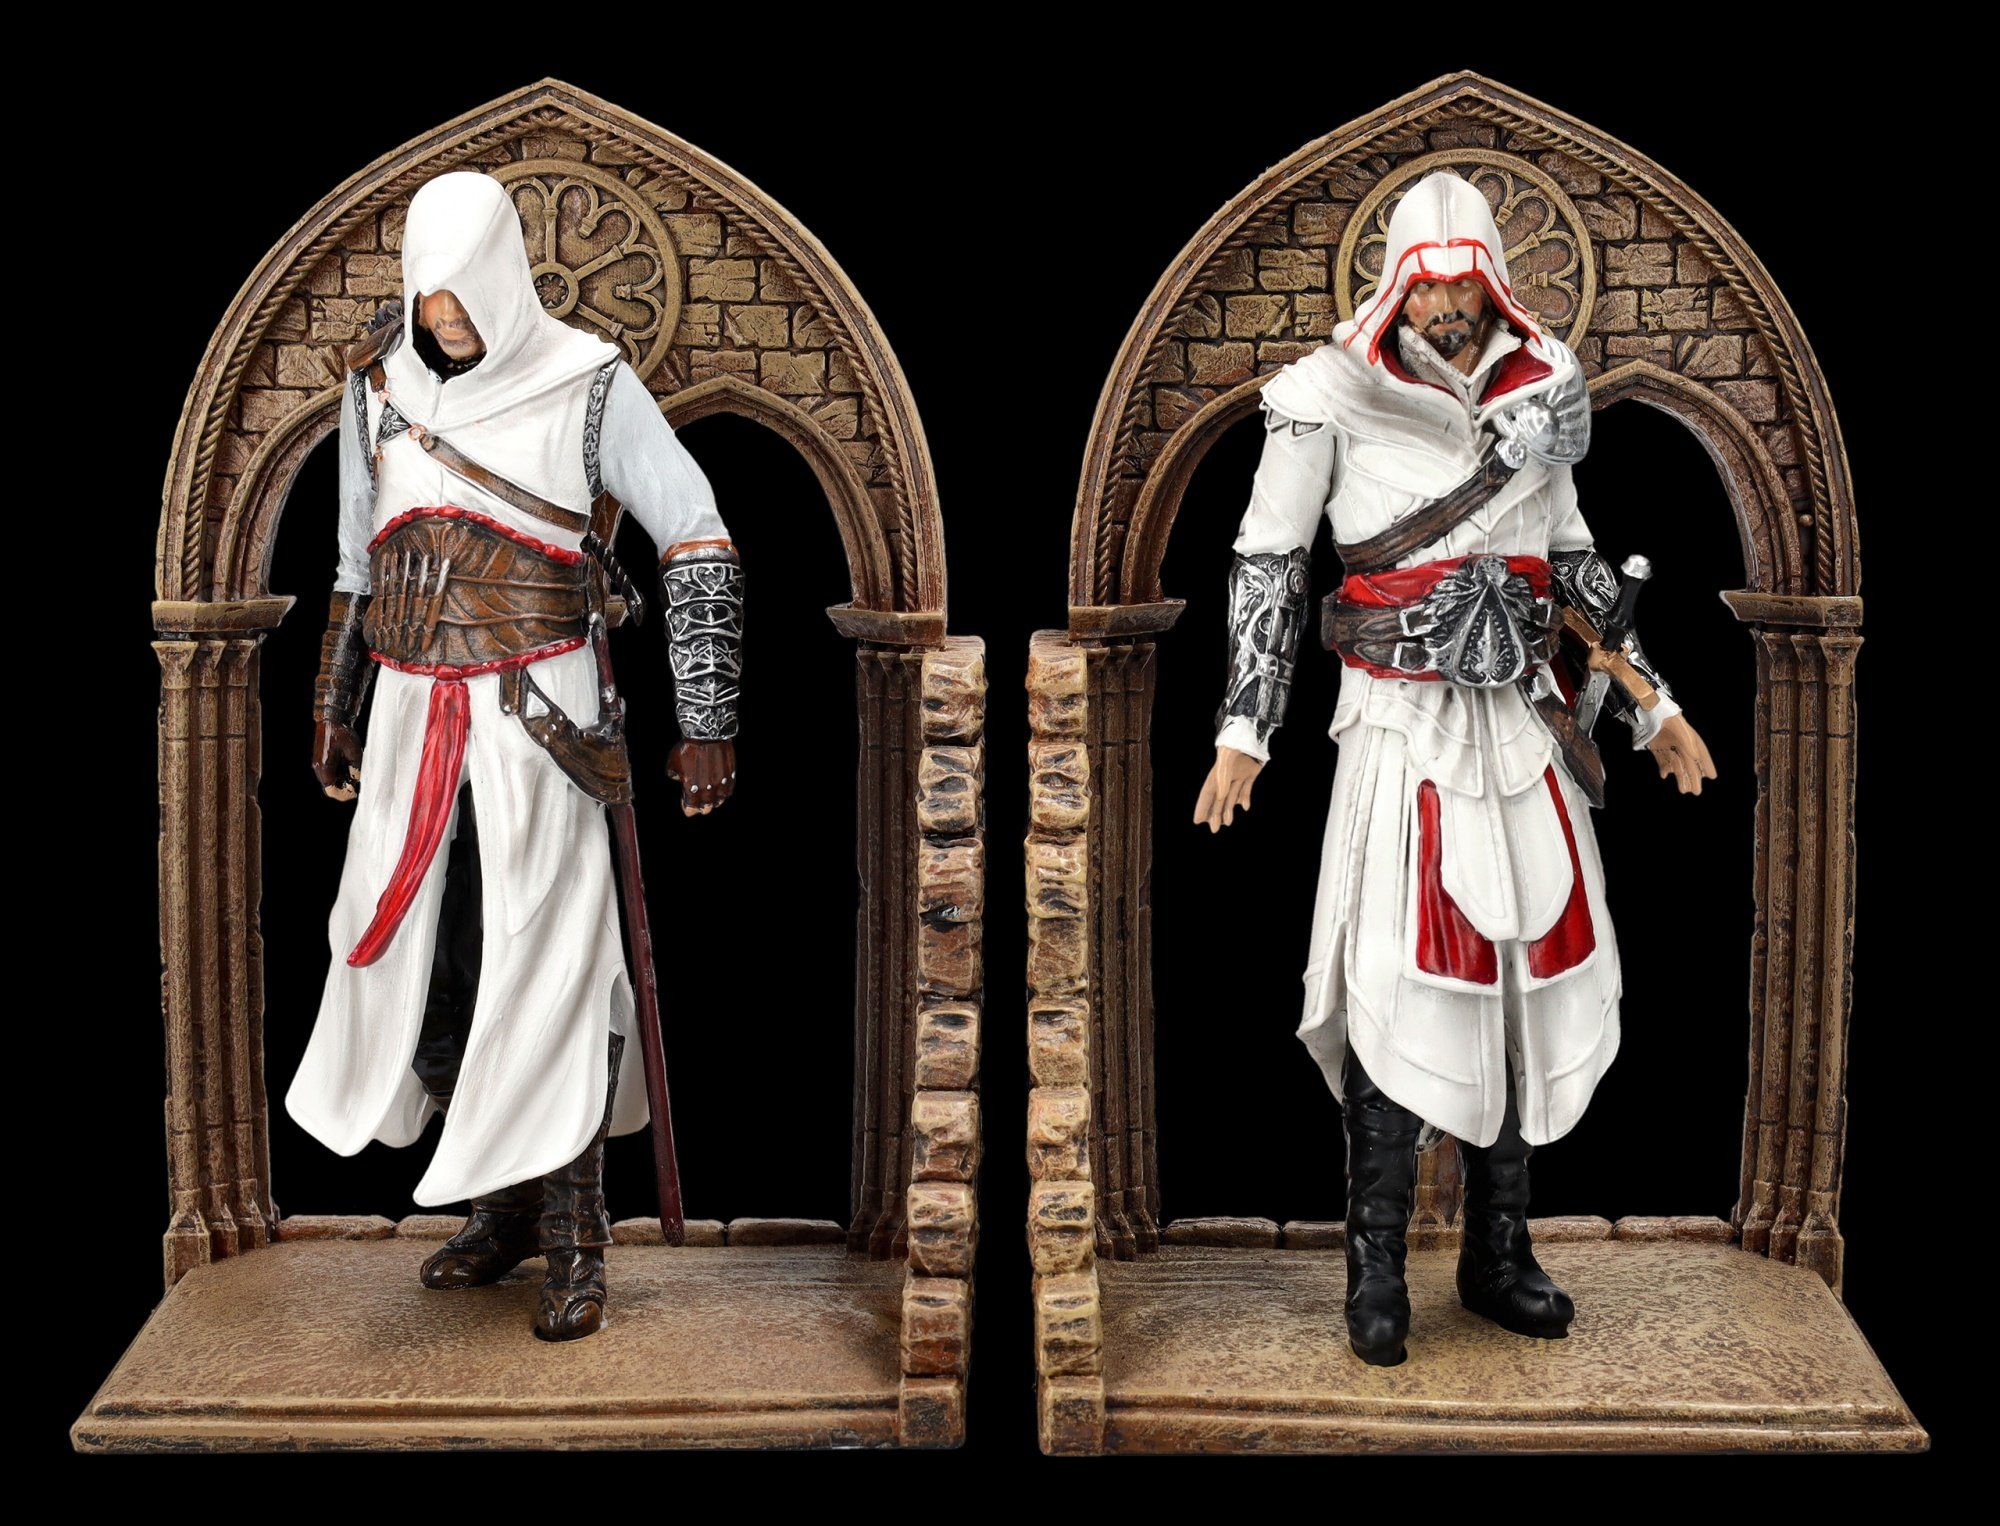 Figuren Shop GmbH Buchstütze Assassins Creed Buchstützen - Altair und Ezio - Gaming Dekofigur Merchandise (2 St)